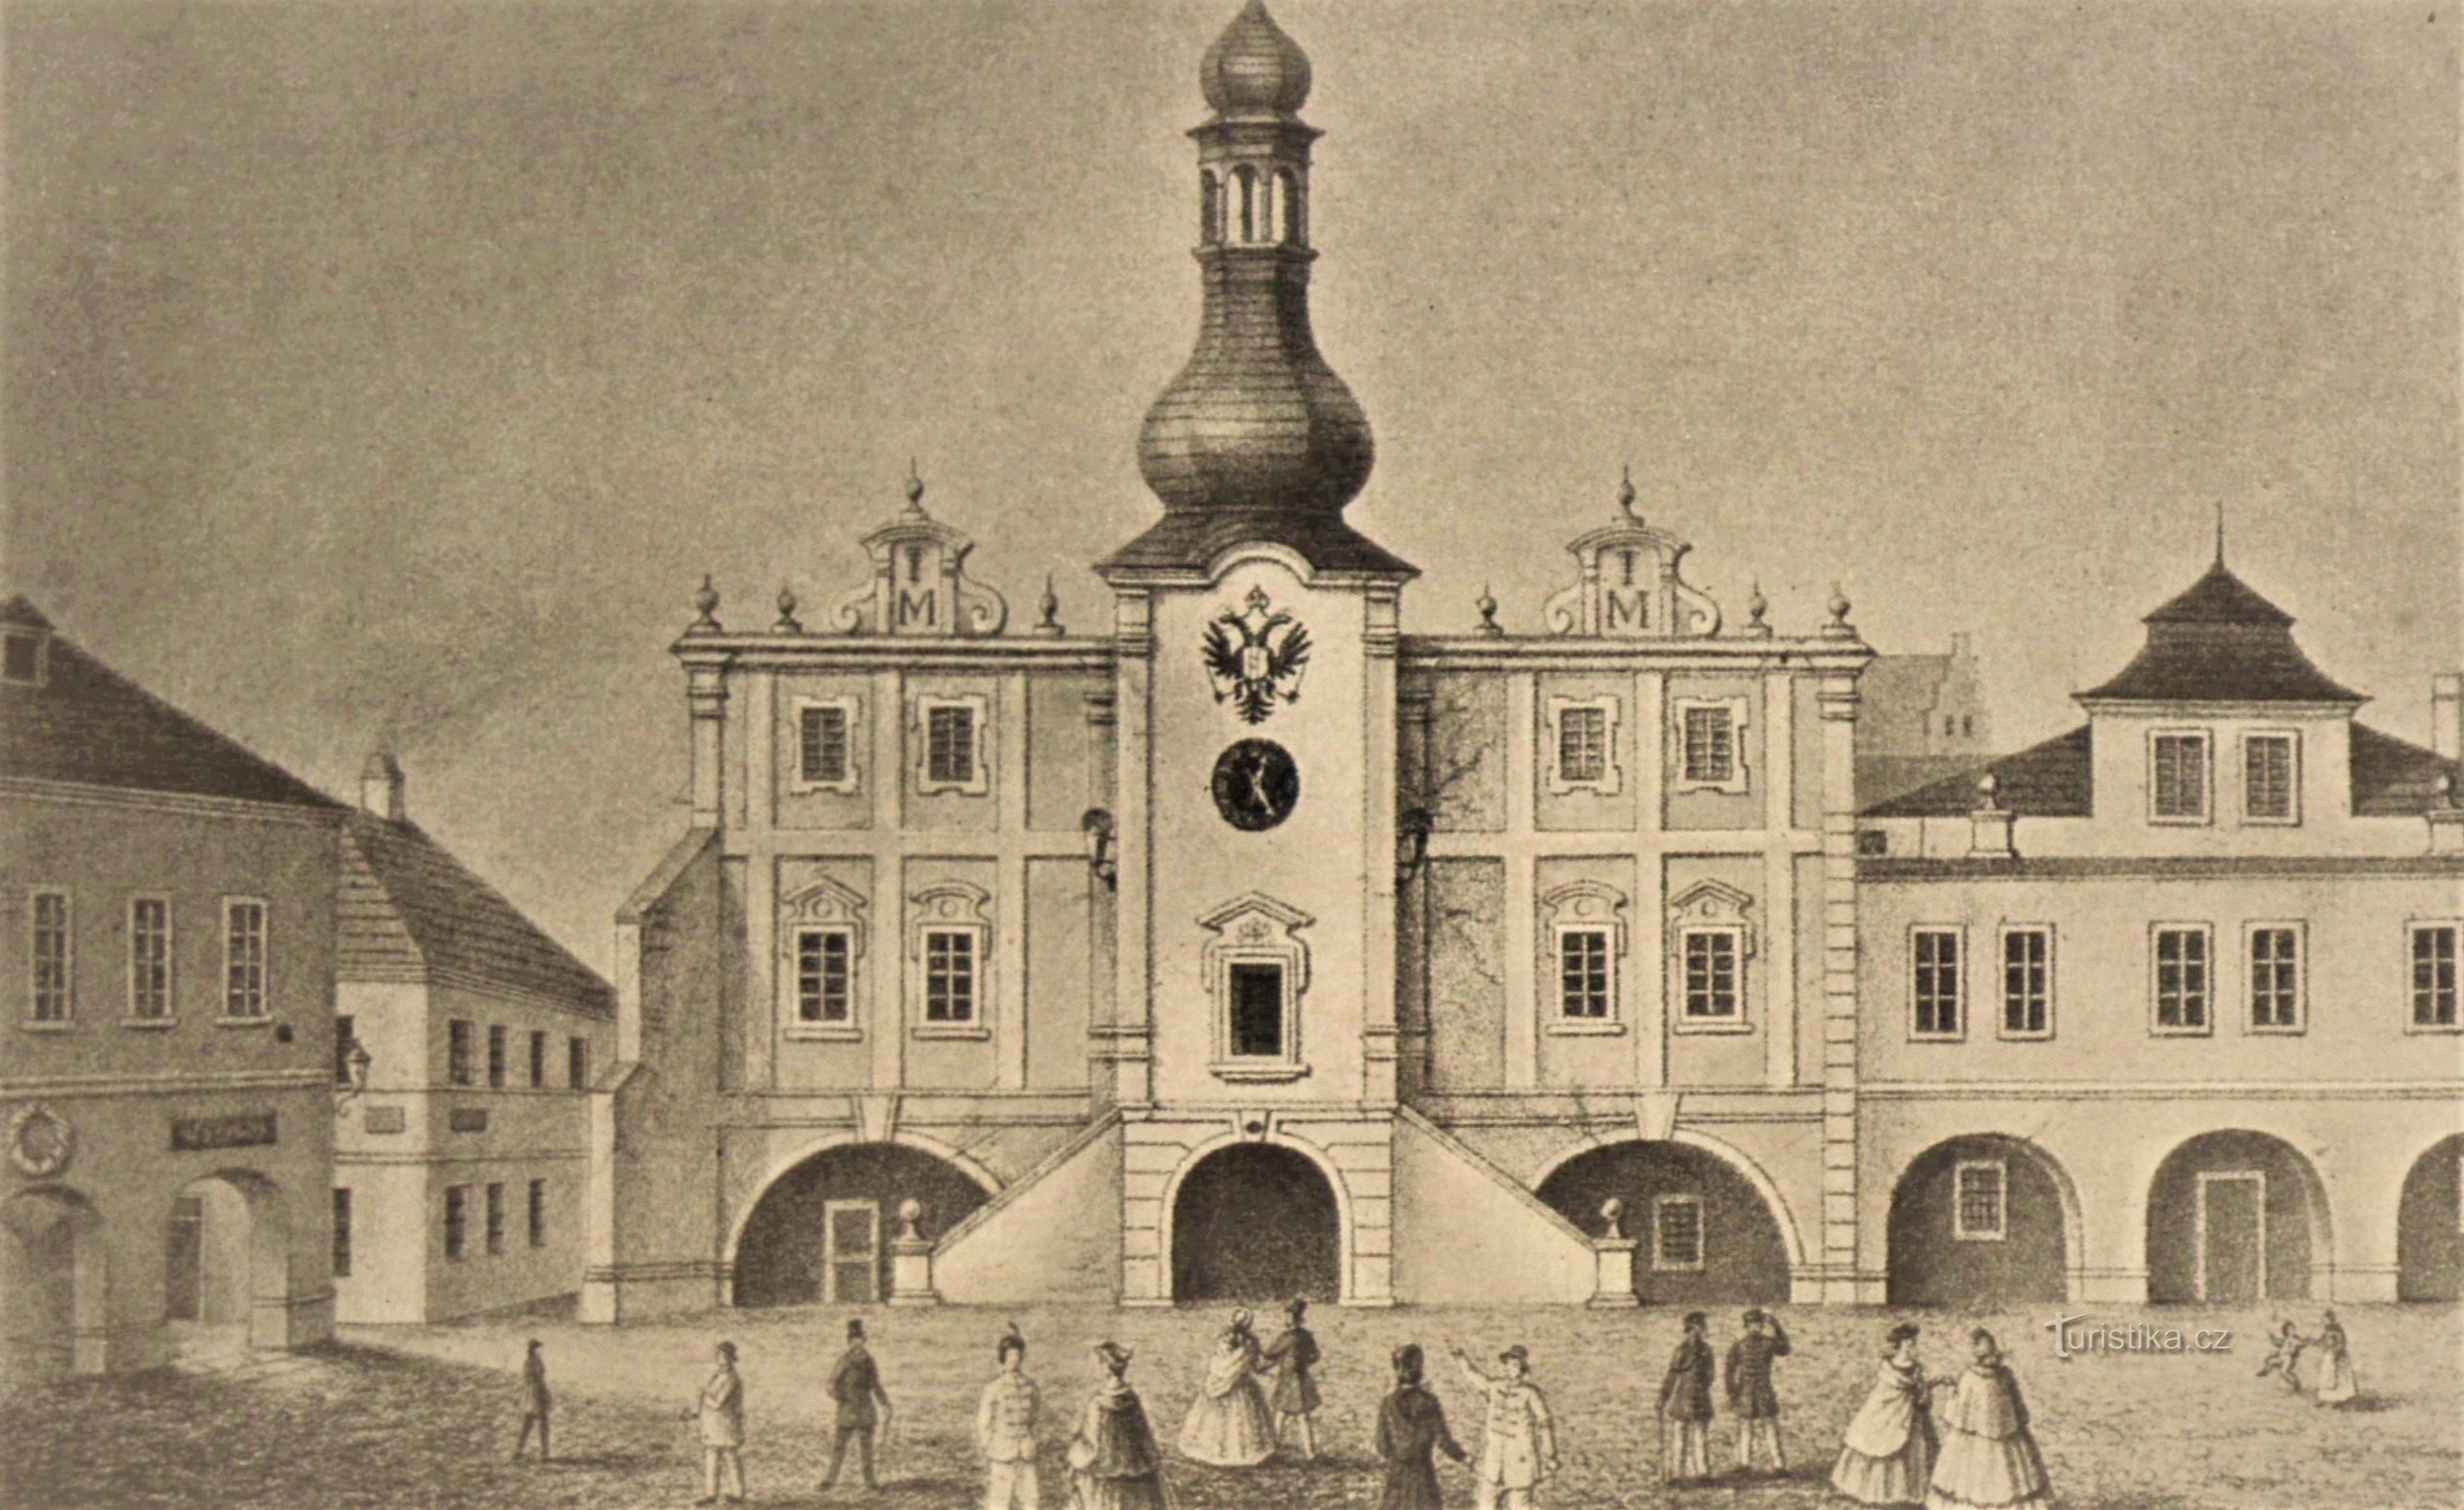 Tòa thị chính ban đầu ở Nové Bydžov (trước năm 1863)